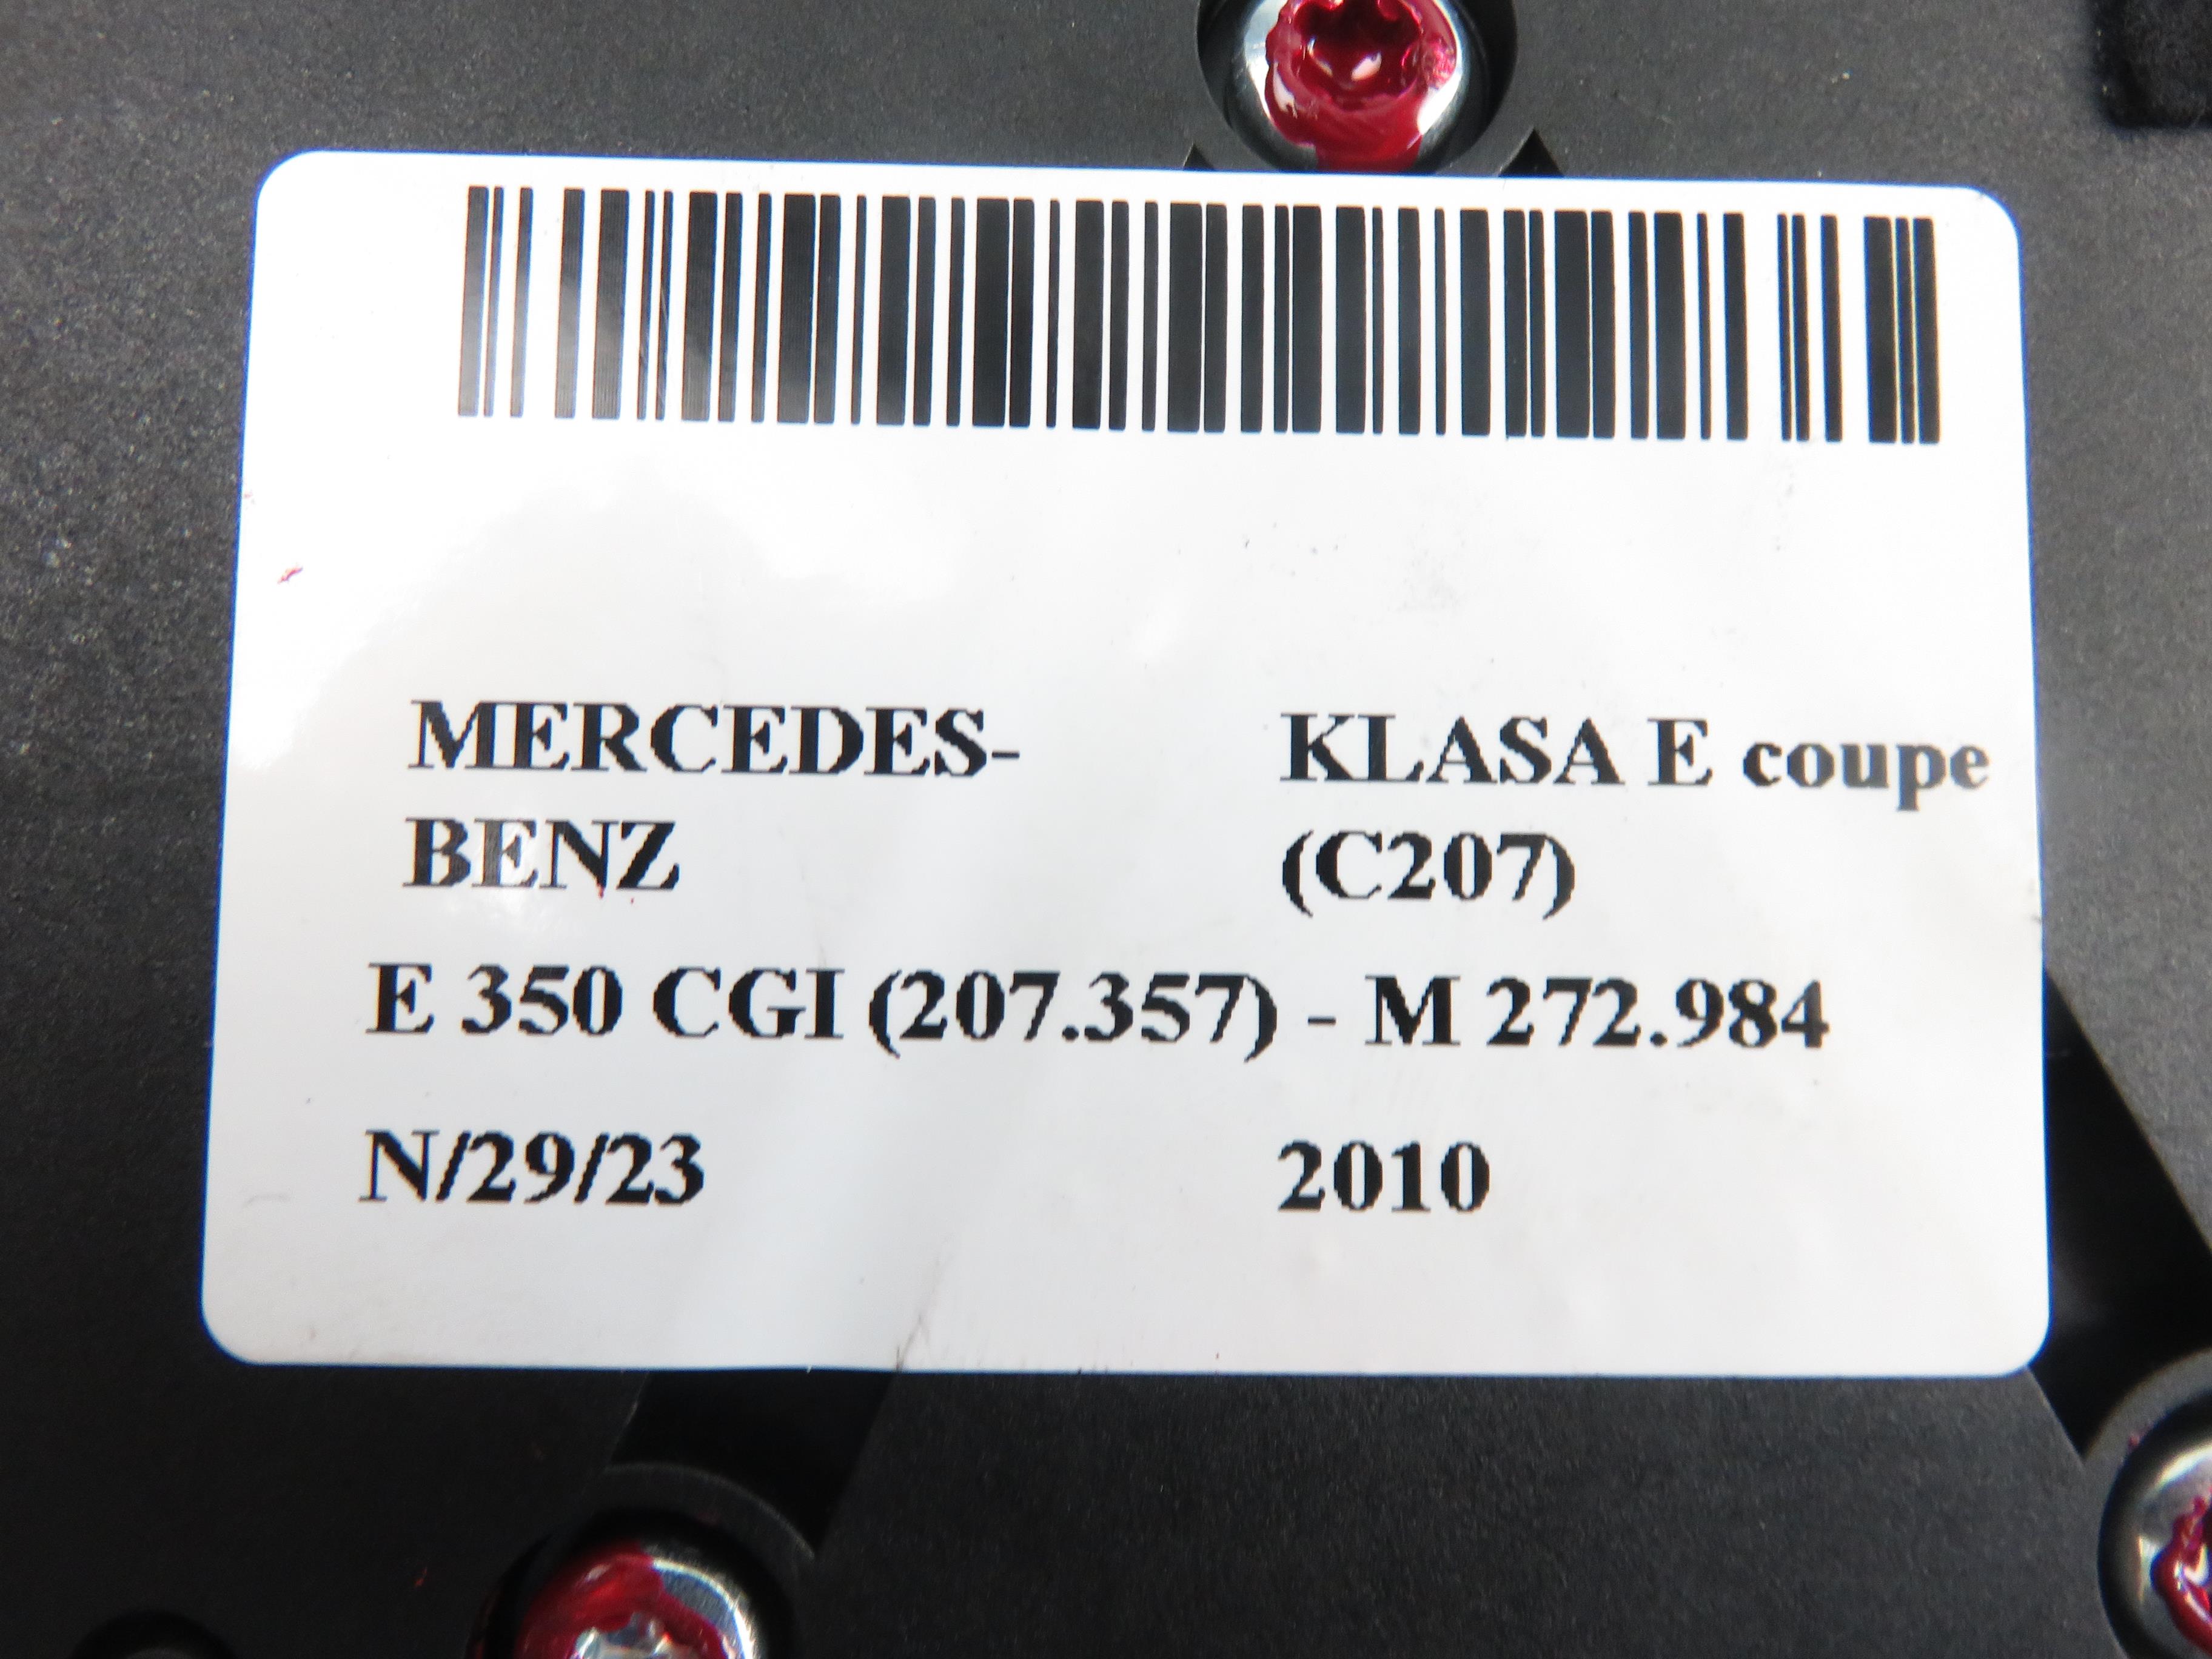 MERCEDES-BENZ E-Class W212/S212/C207/A207 (2009-2016) Fuel pump relay 2124460171, 2129000406 21228528